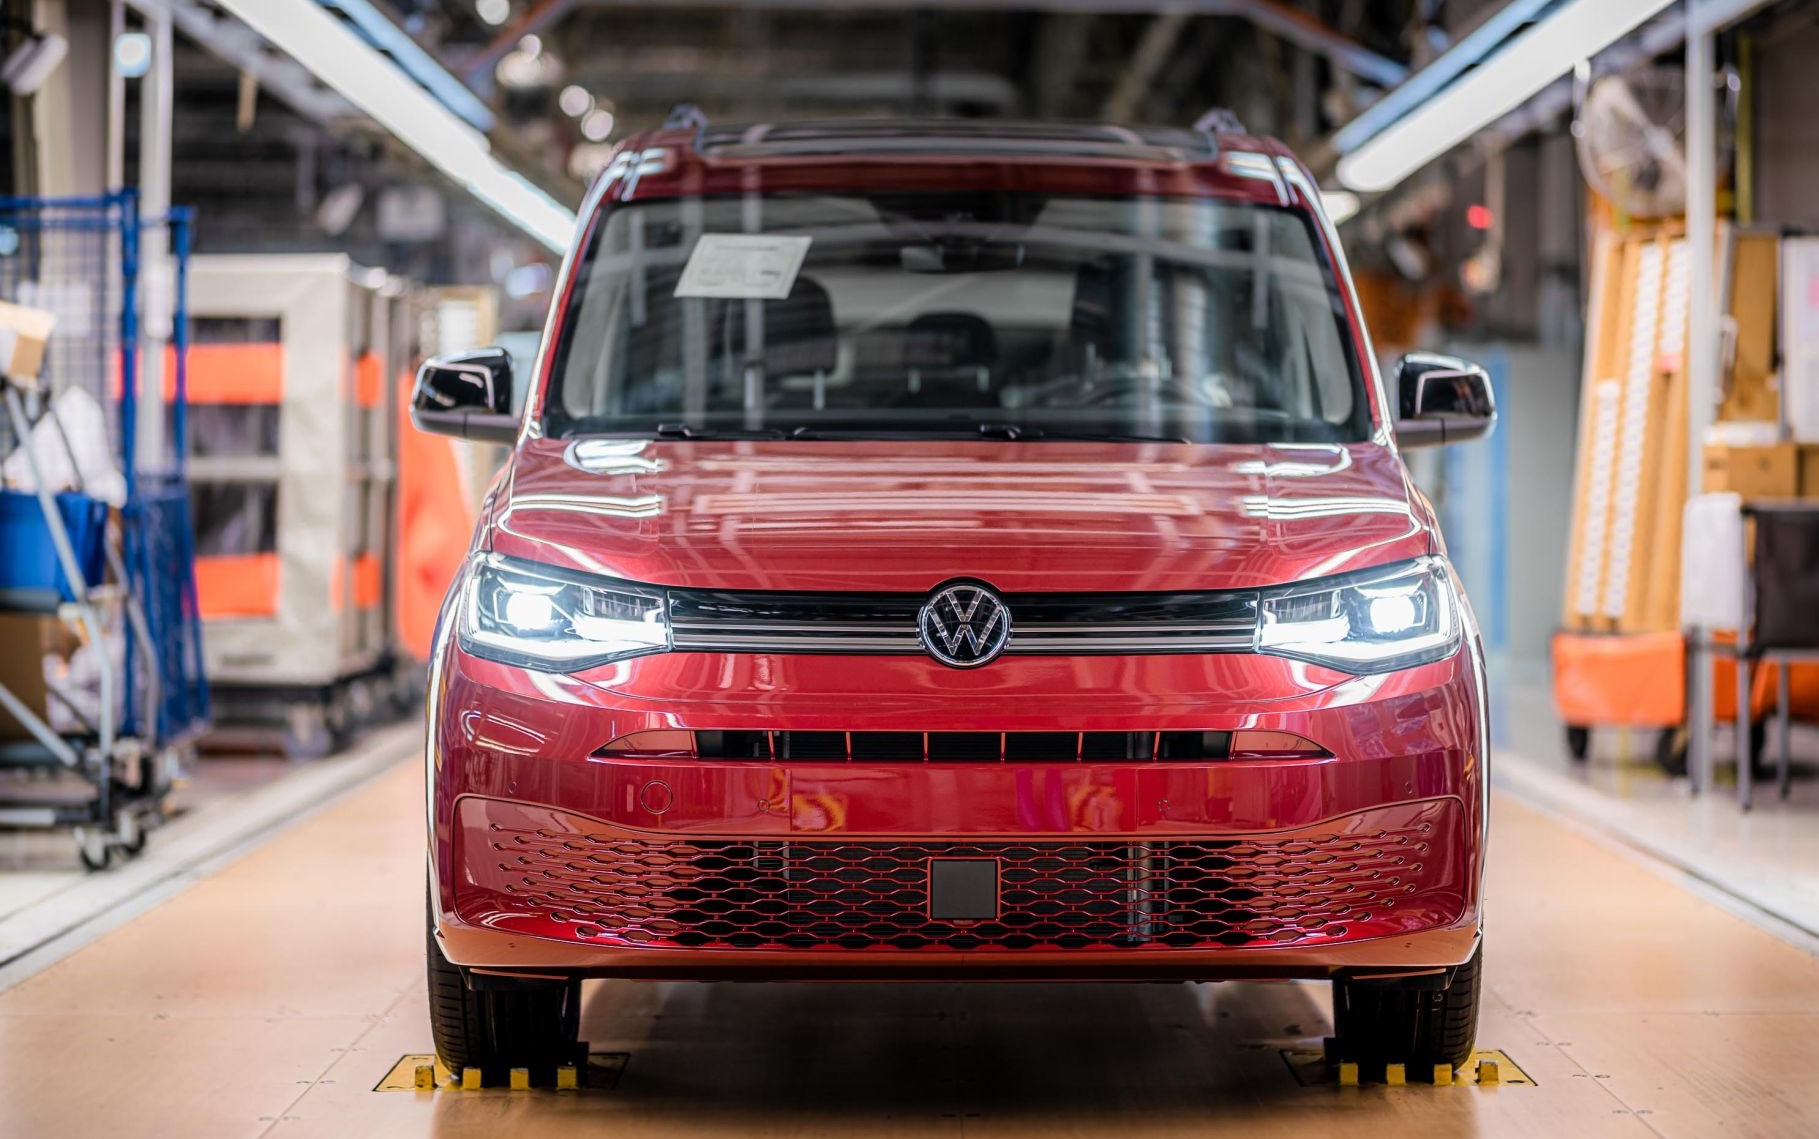 2021 Yeni Volkswagen Caddy Alınır mı? Öne Çıkan Özellikleri